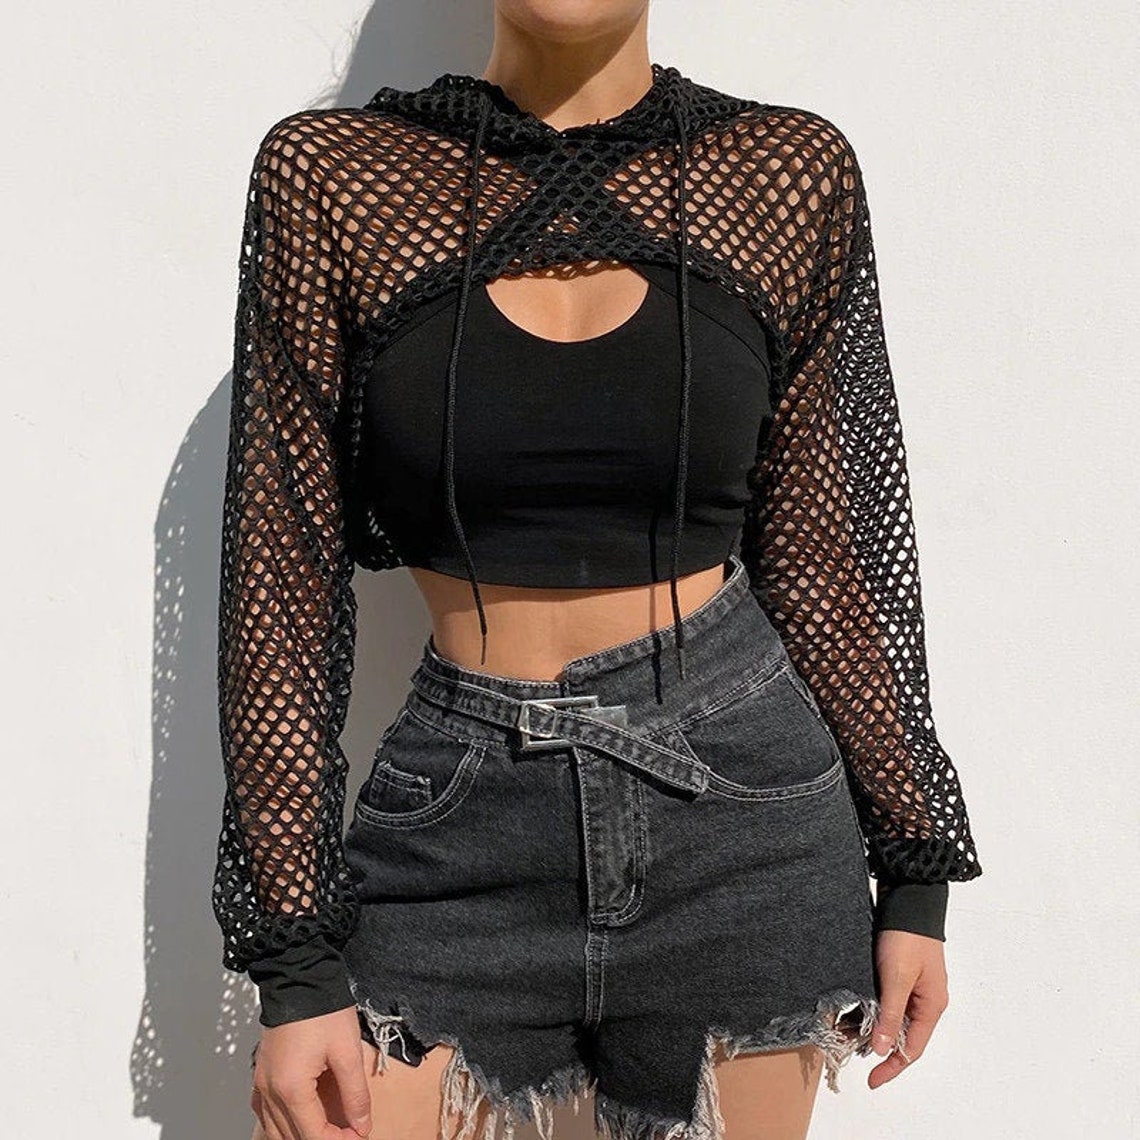 Hooded Fishnet Crop Top Long Sleeve Shirt Y2K / Streetwear | Etsy